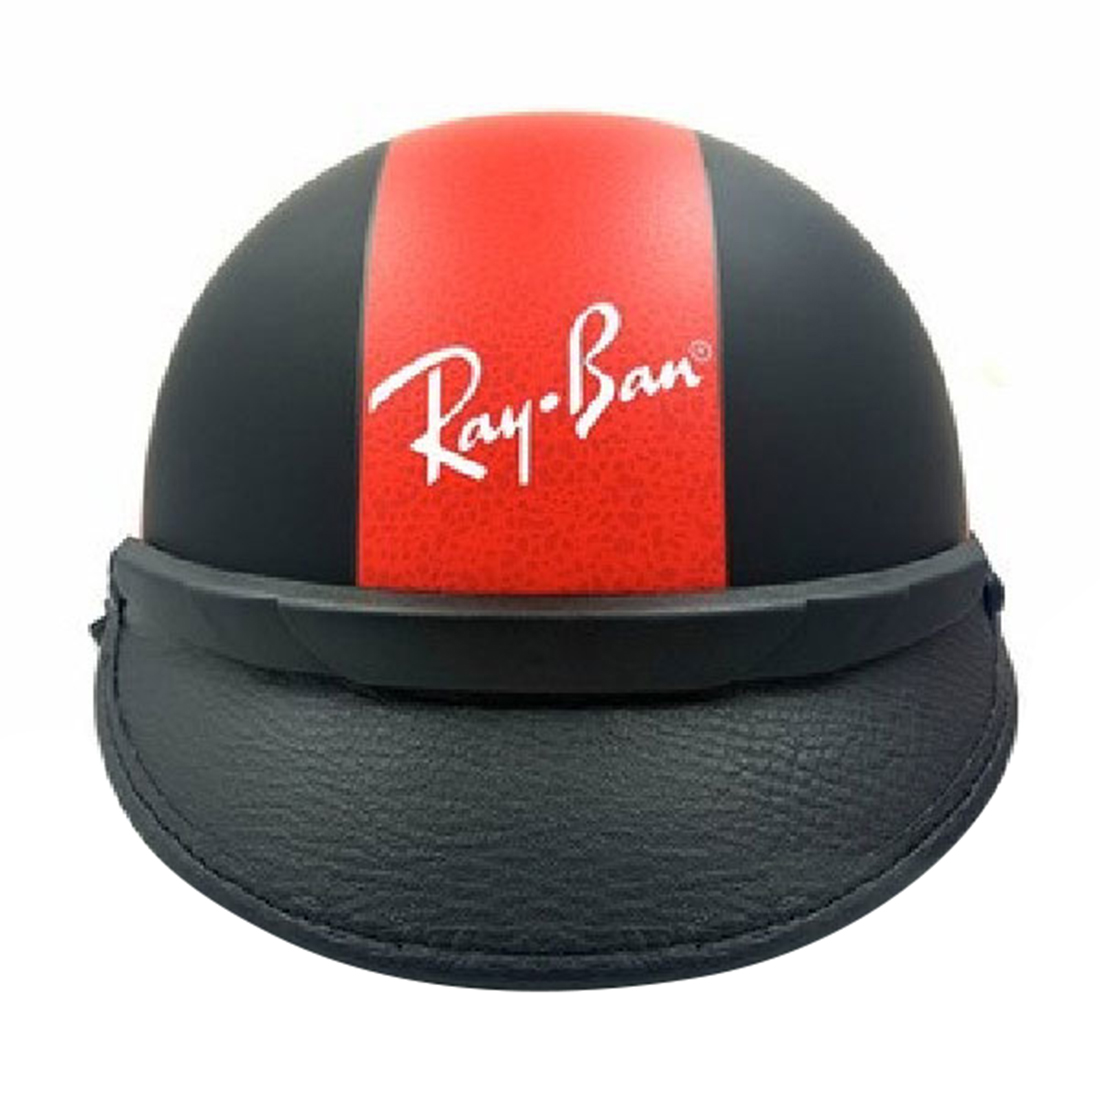 [HCM]Nón bảo hiểm hiệu RAYBAN RBNON1 chính hãng